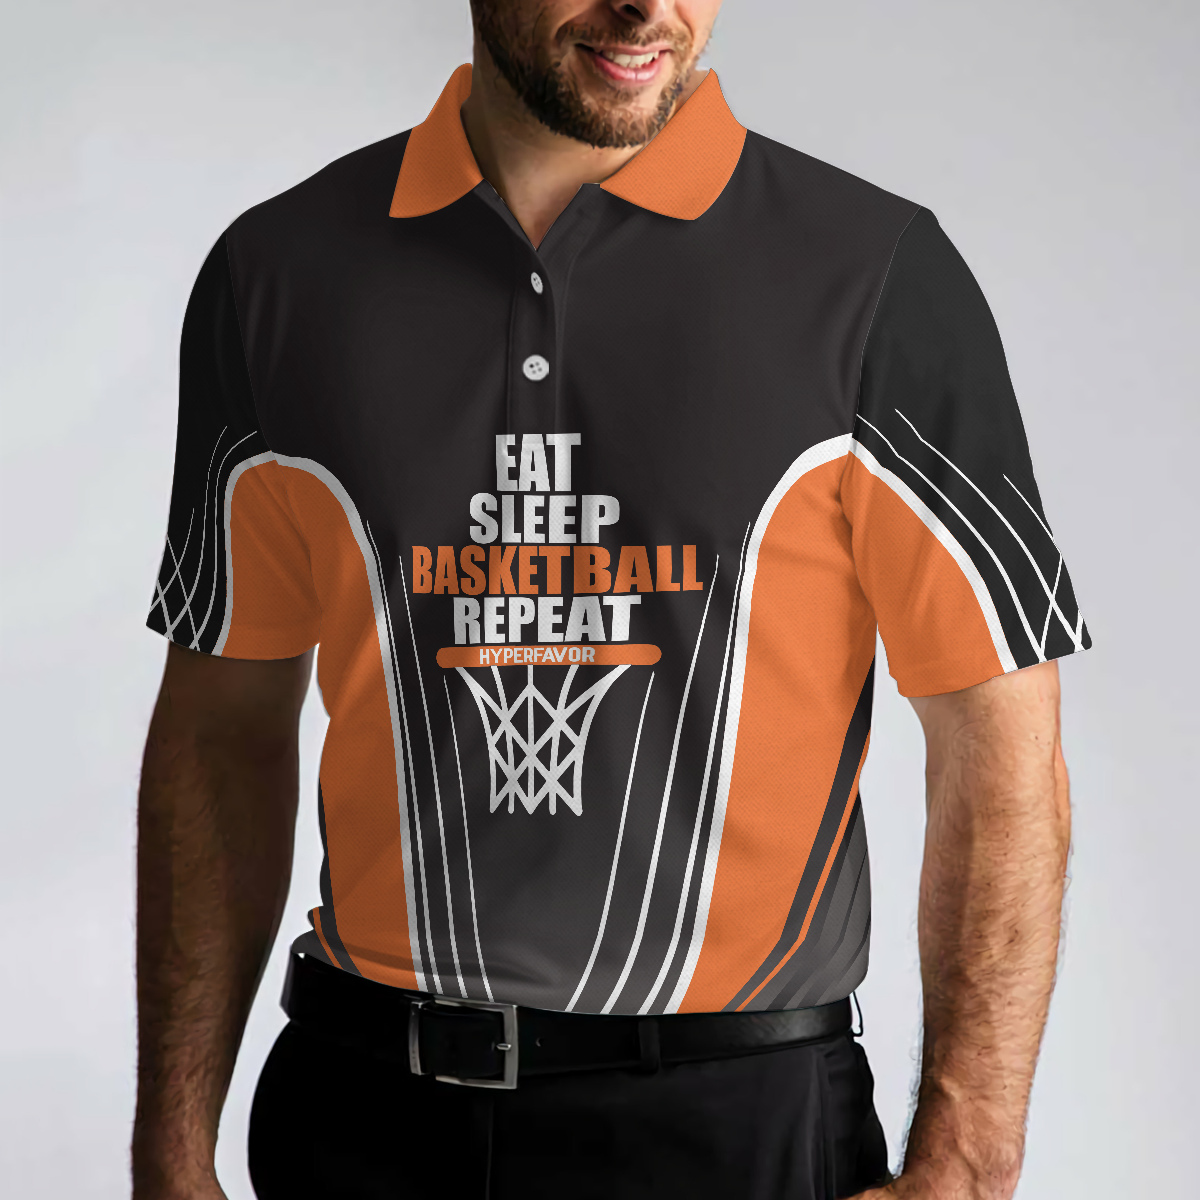 Basketball Players Eat Sleep Basketball Repeat Polo Shirt Black And Orange BasketBall Shirt For Basketball Fans - 5